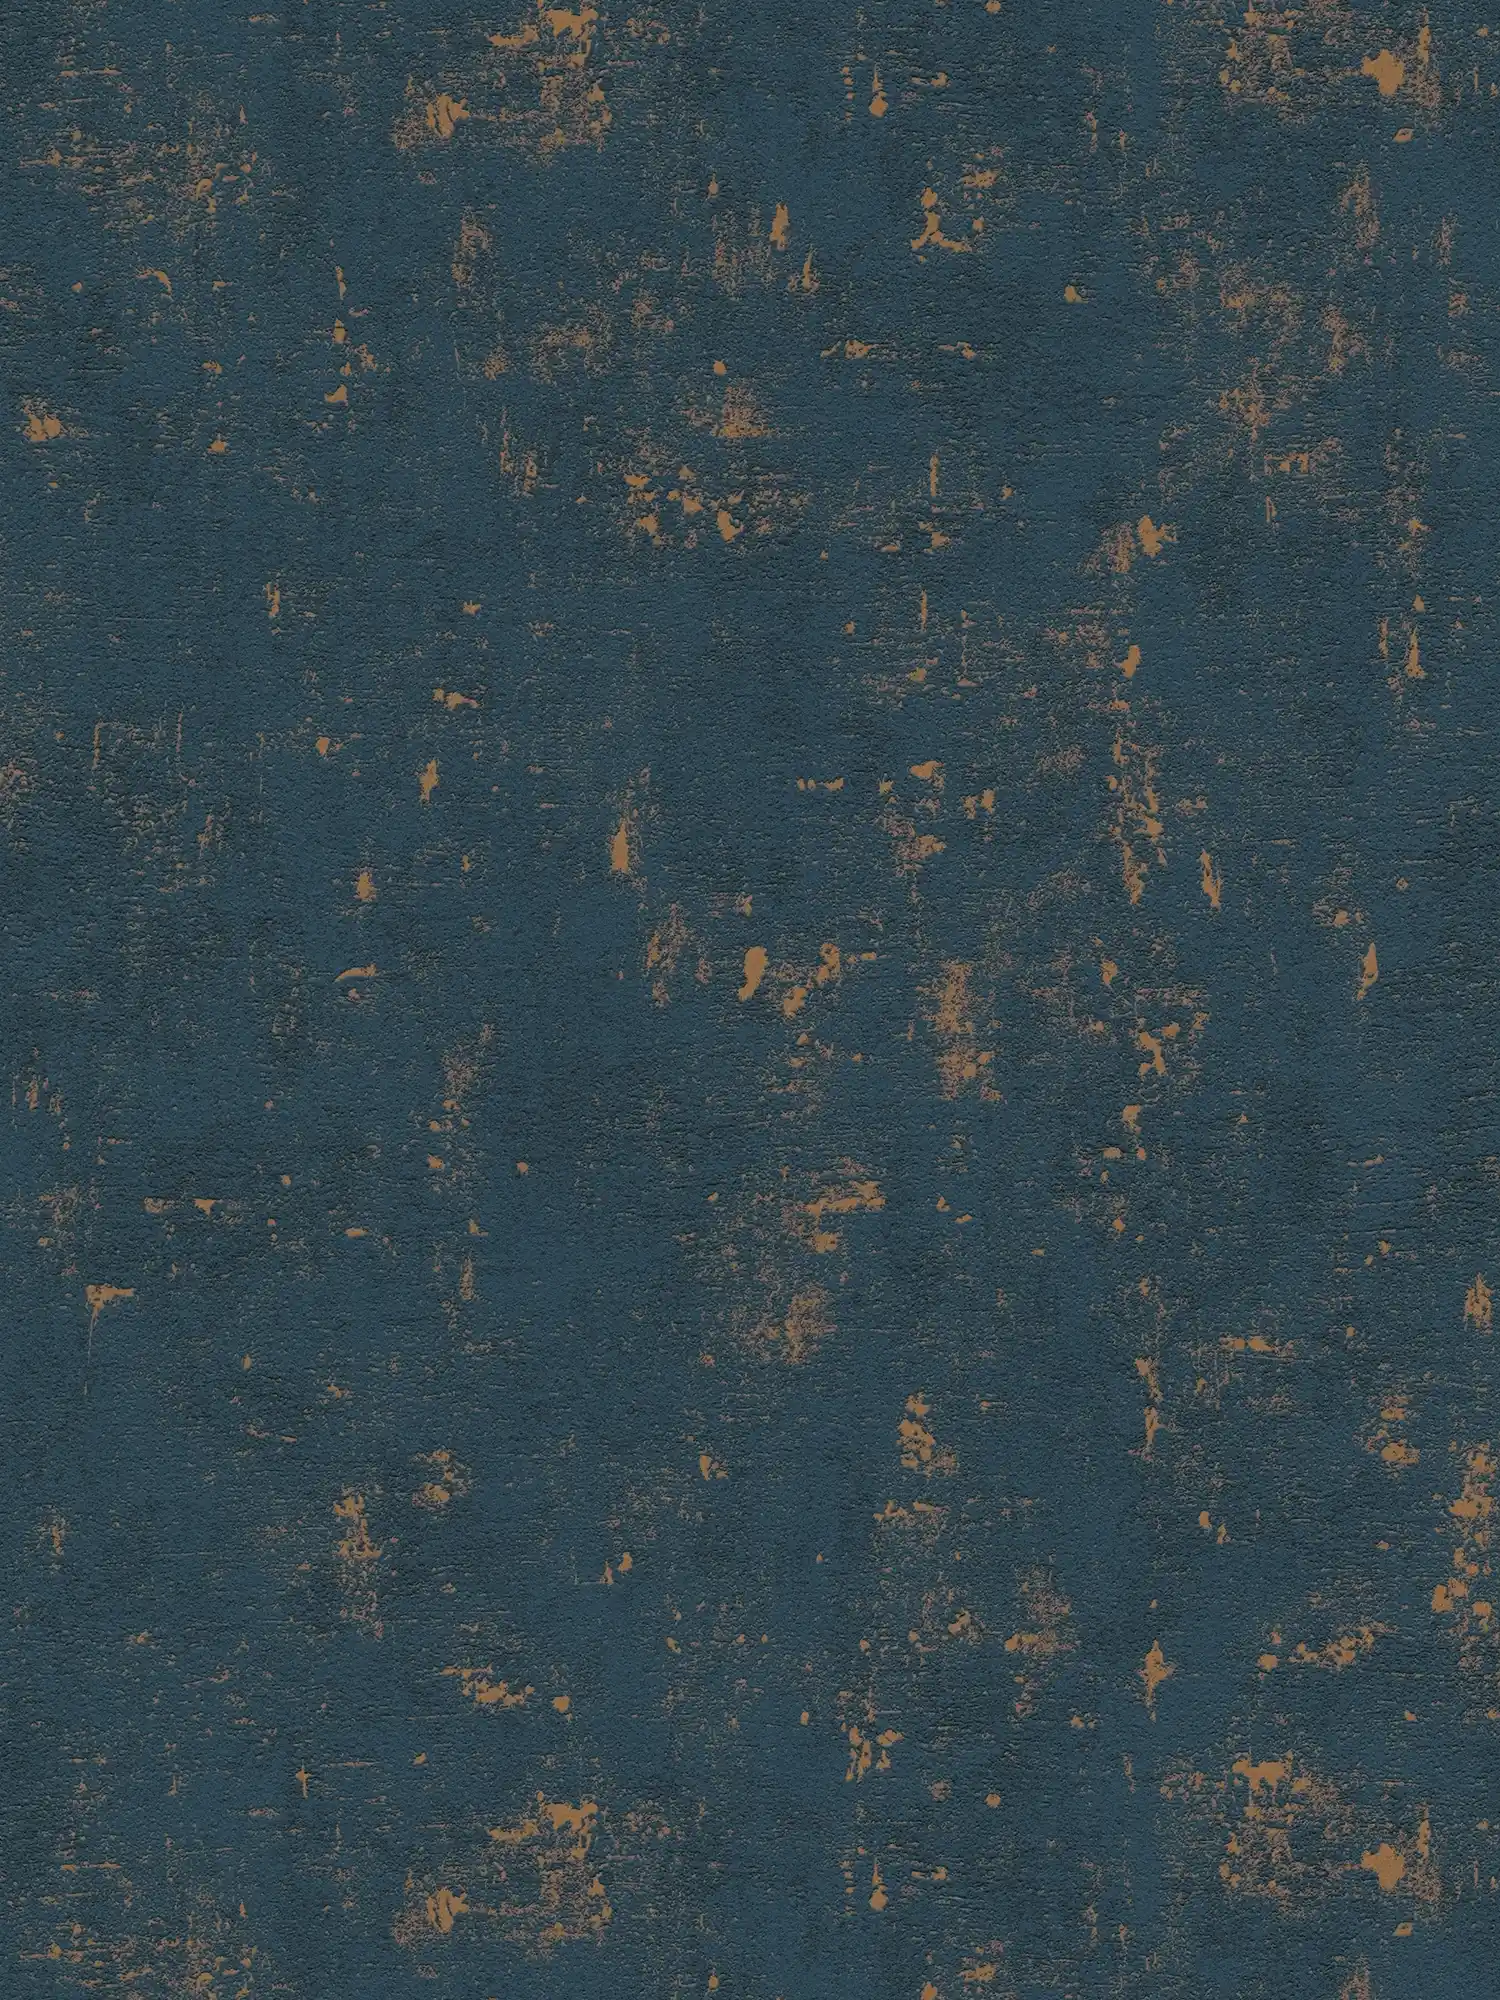 Bastpatroon behang met metallic effecten - donkerblauw, goud
